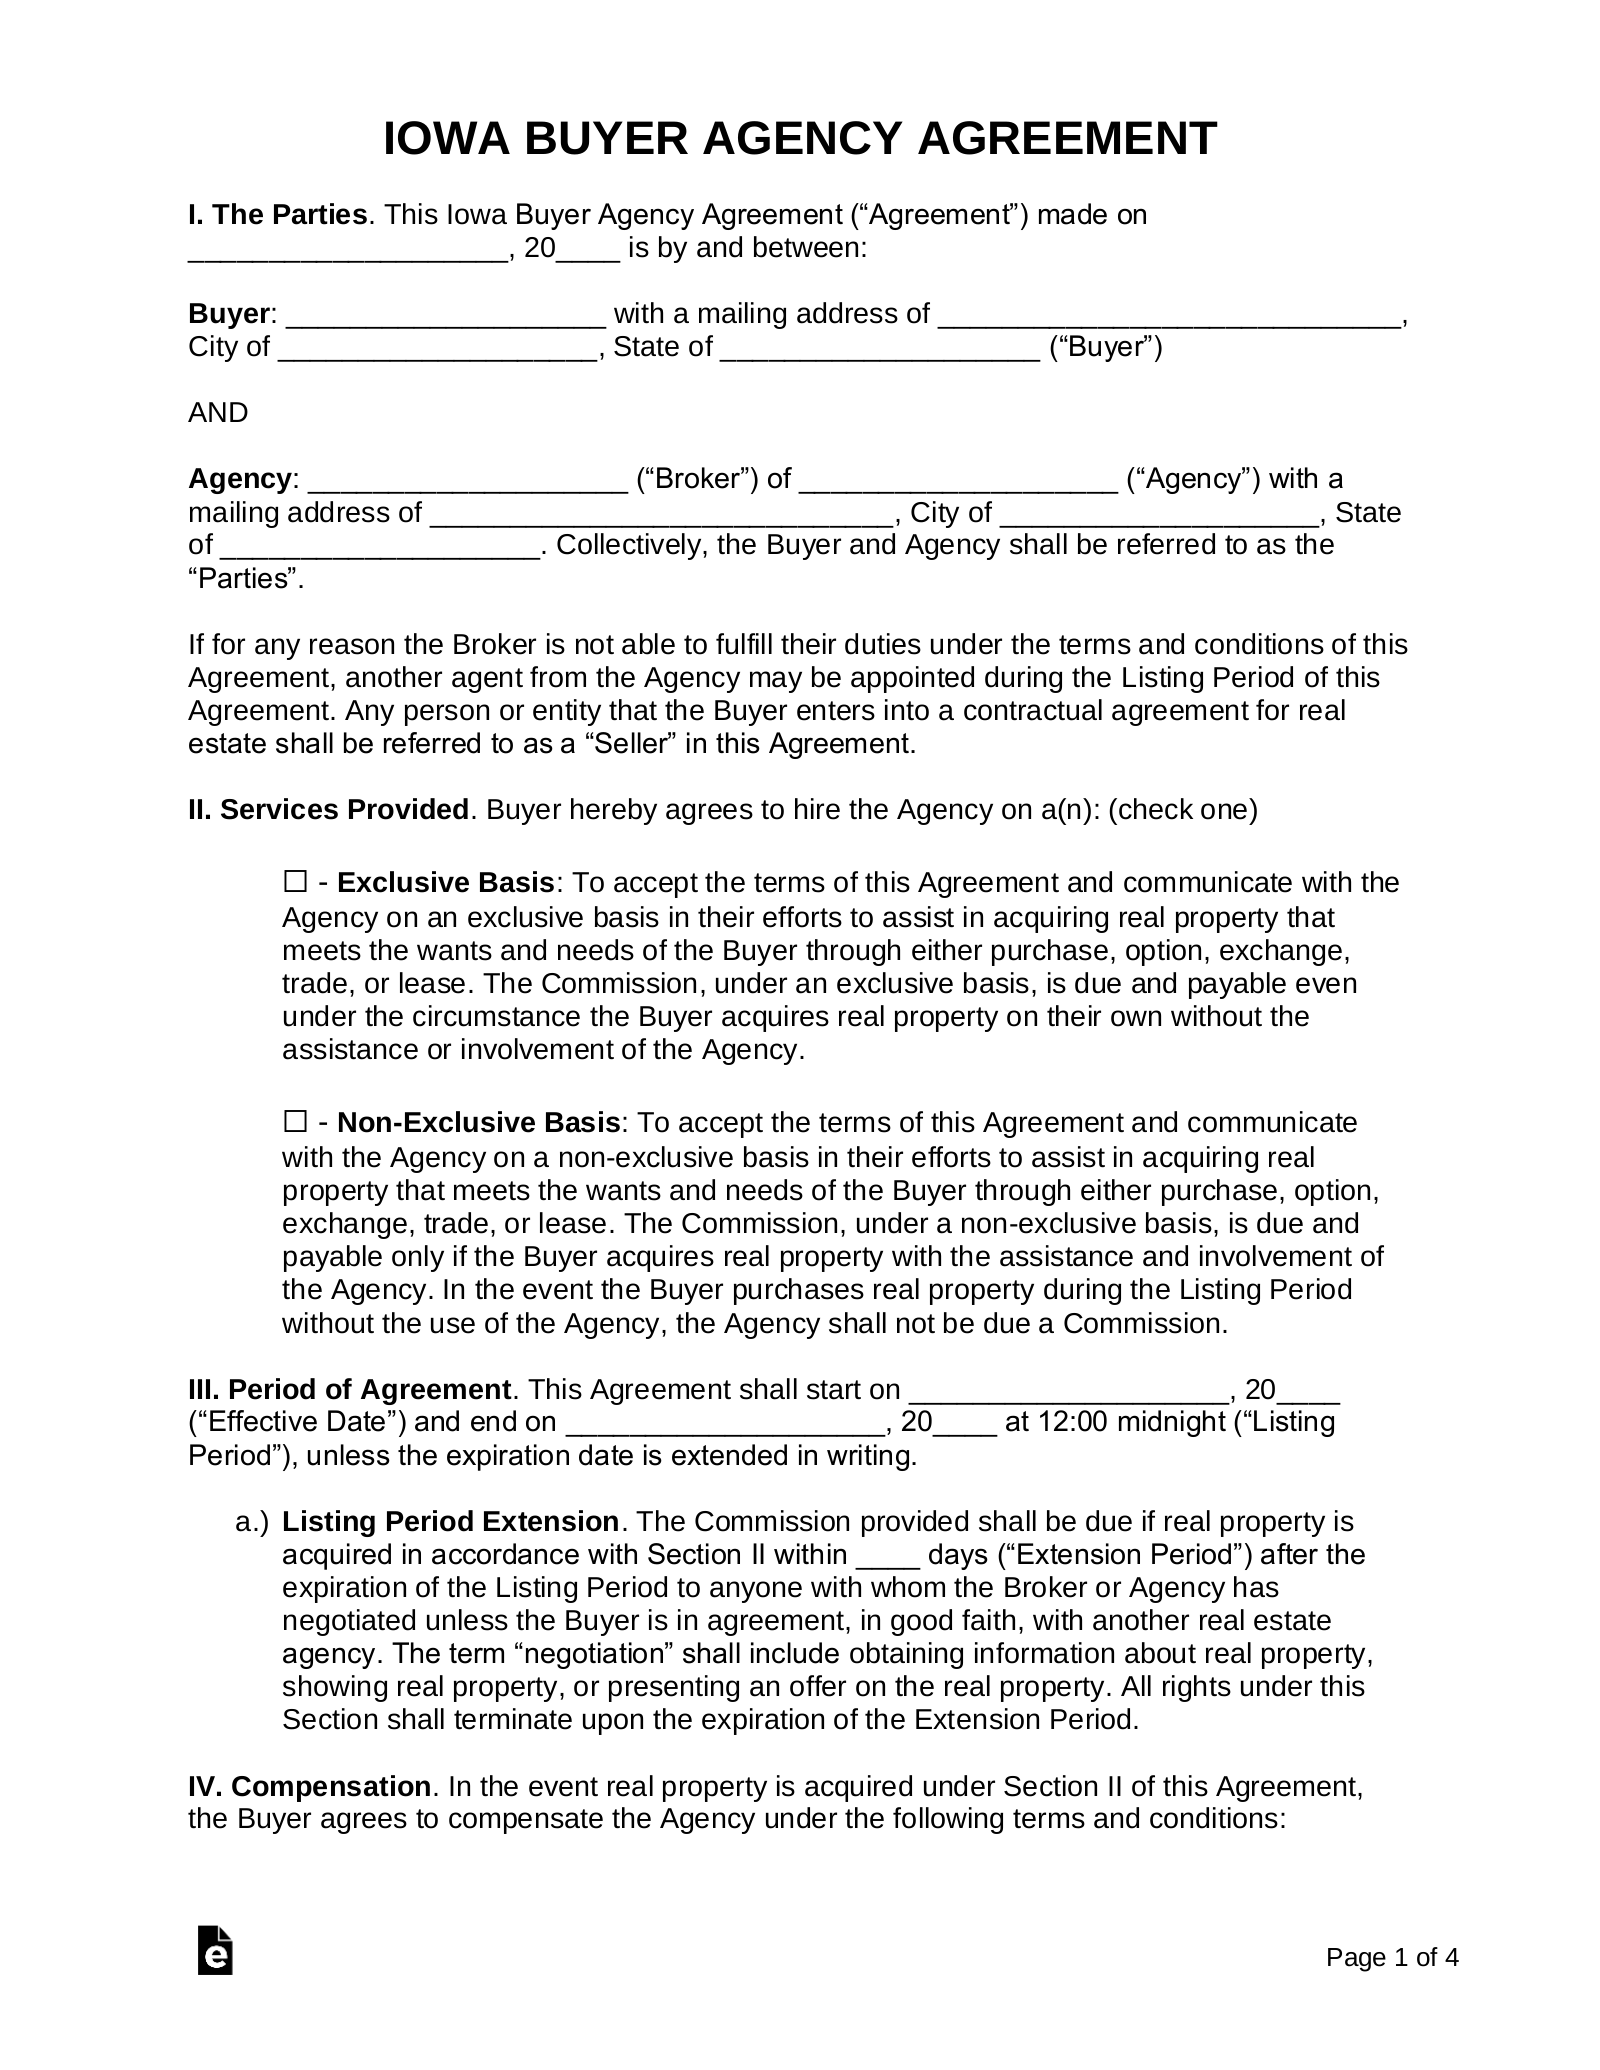 Iowa Buyer Agency Agreement